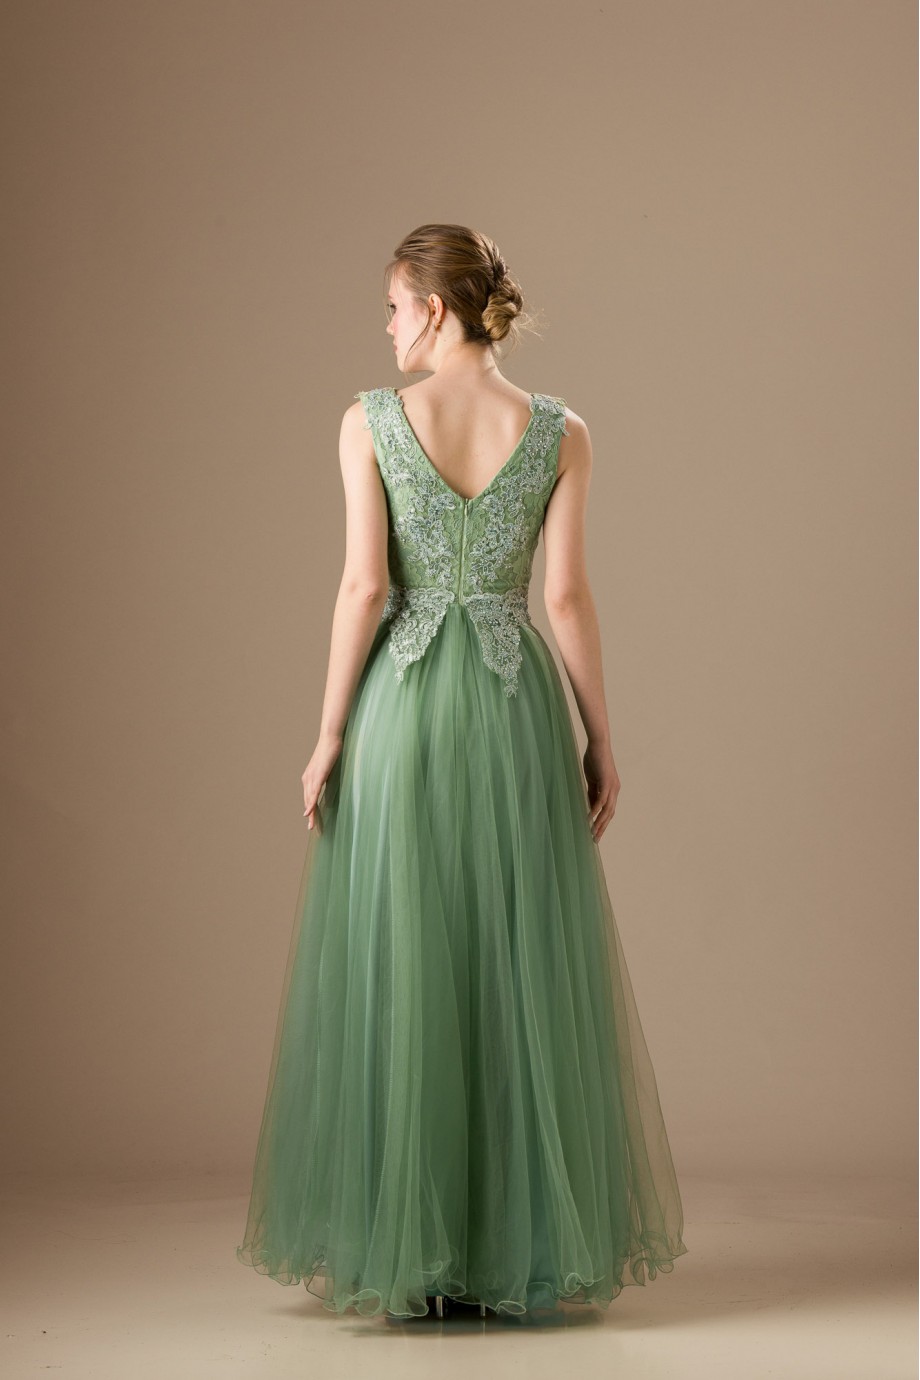 Μακρύ πράσινο φόρεμα από τούλι